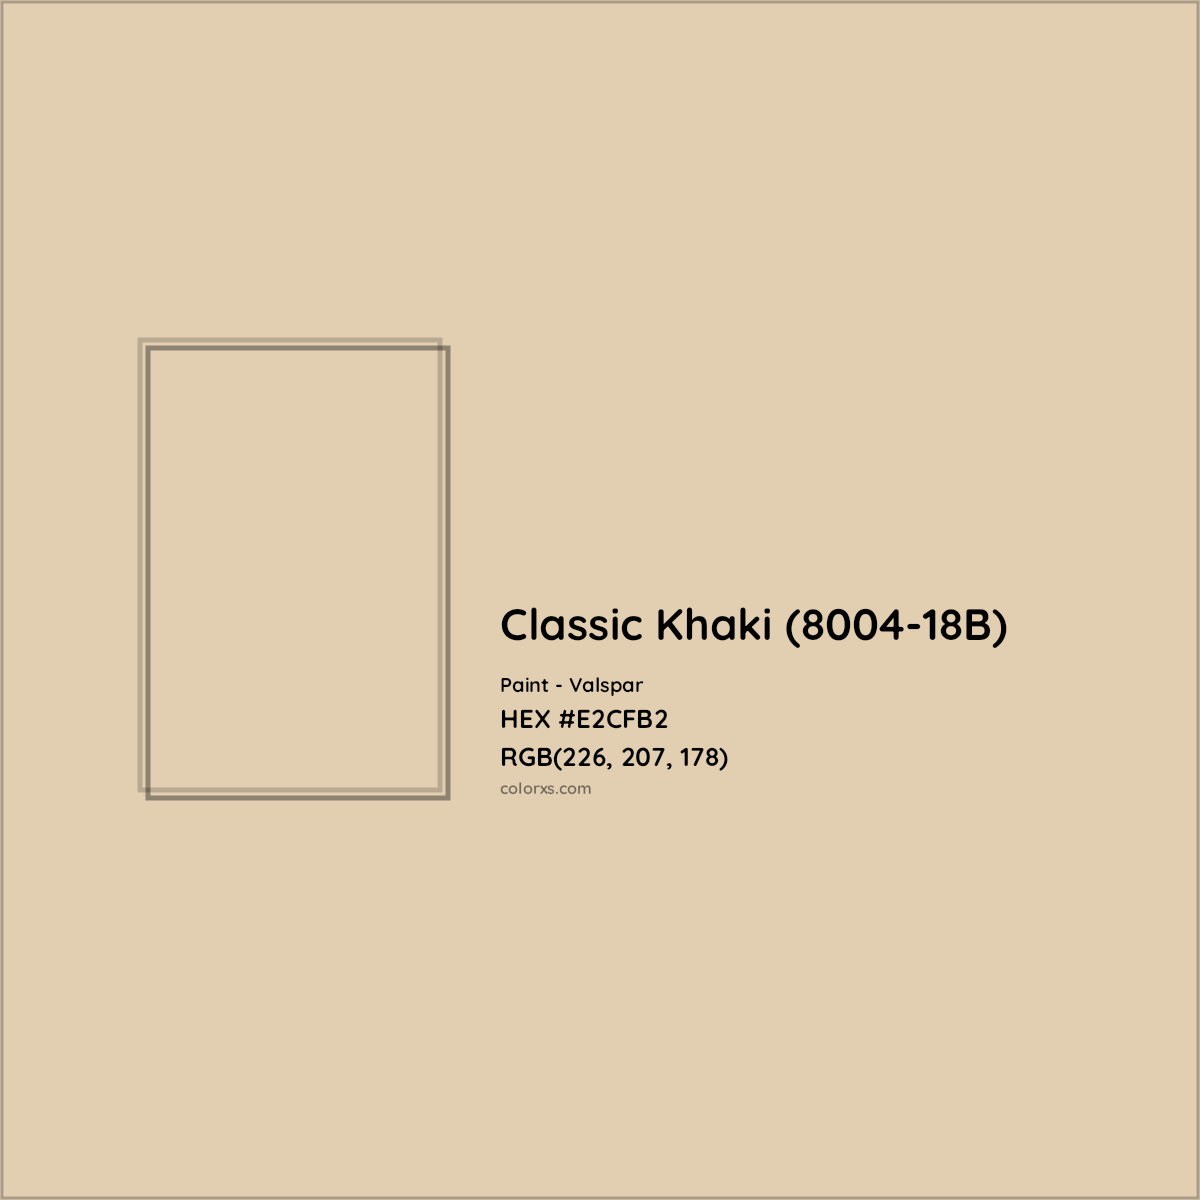 HEX #E2CFB2 Classic Khaki (8004-18B) Paint Valspar - Color Code